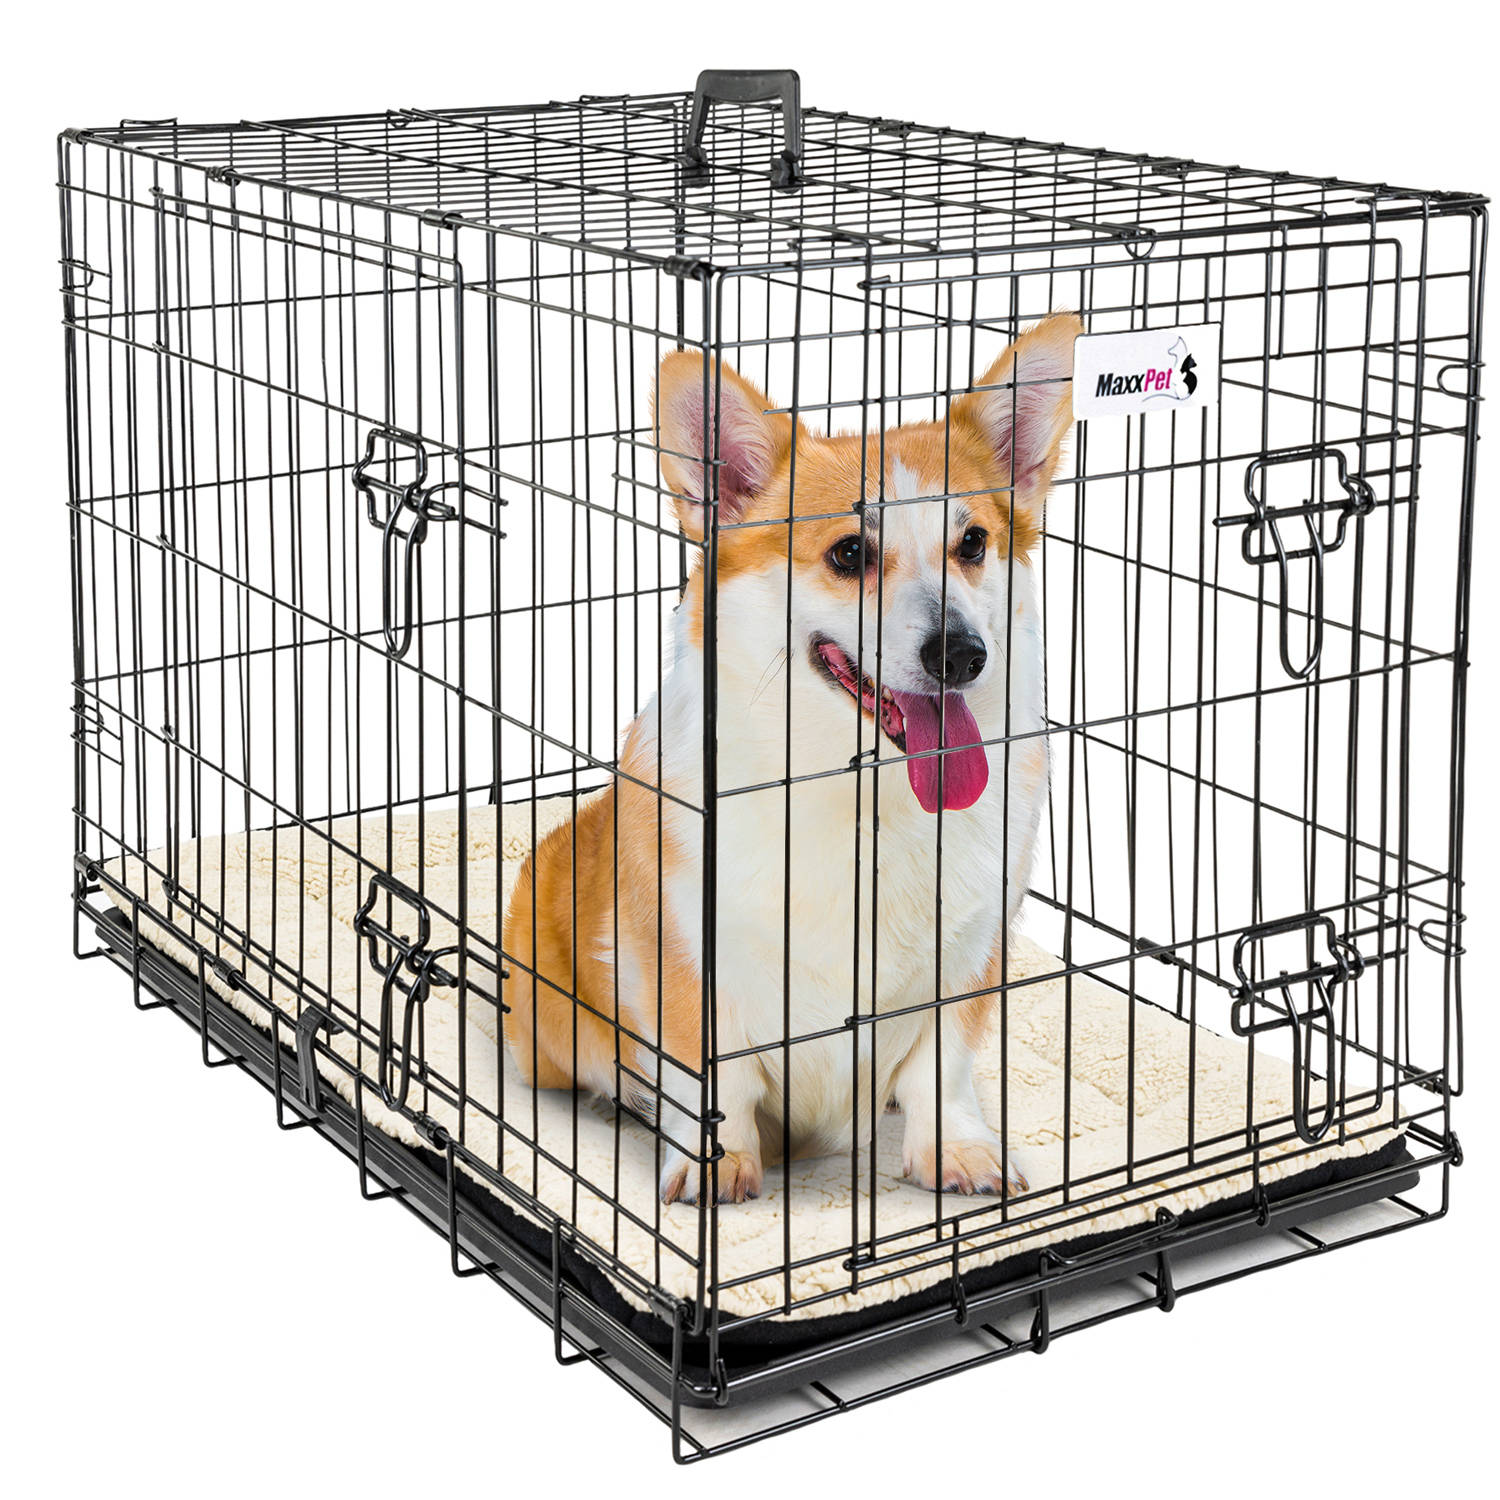 Maxxpet Hondenbench Bench Bench Voor Honden Hondenbench Opvouwbaar Incl. Plaid 91 X 57 X 64 Cm